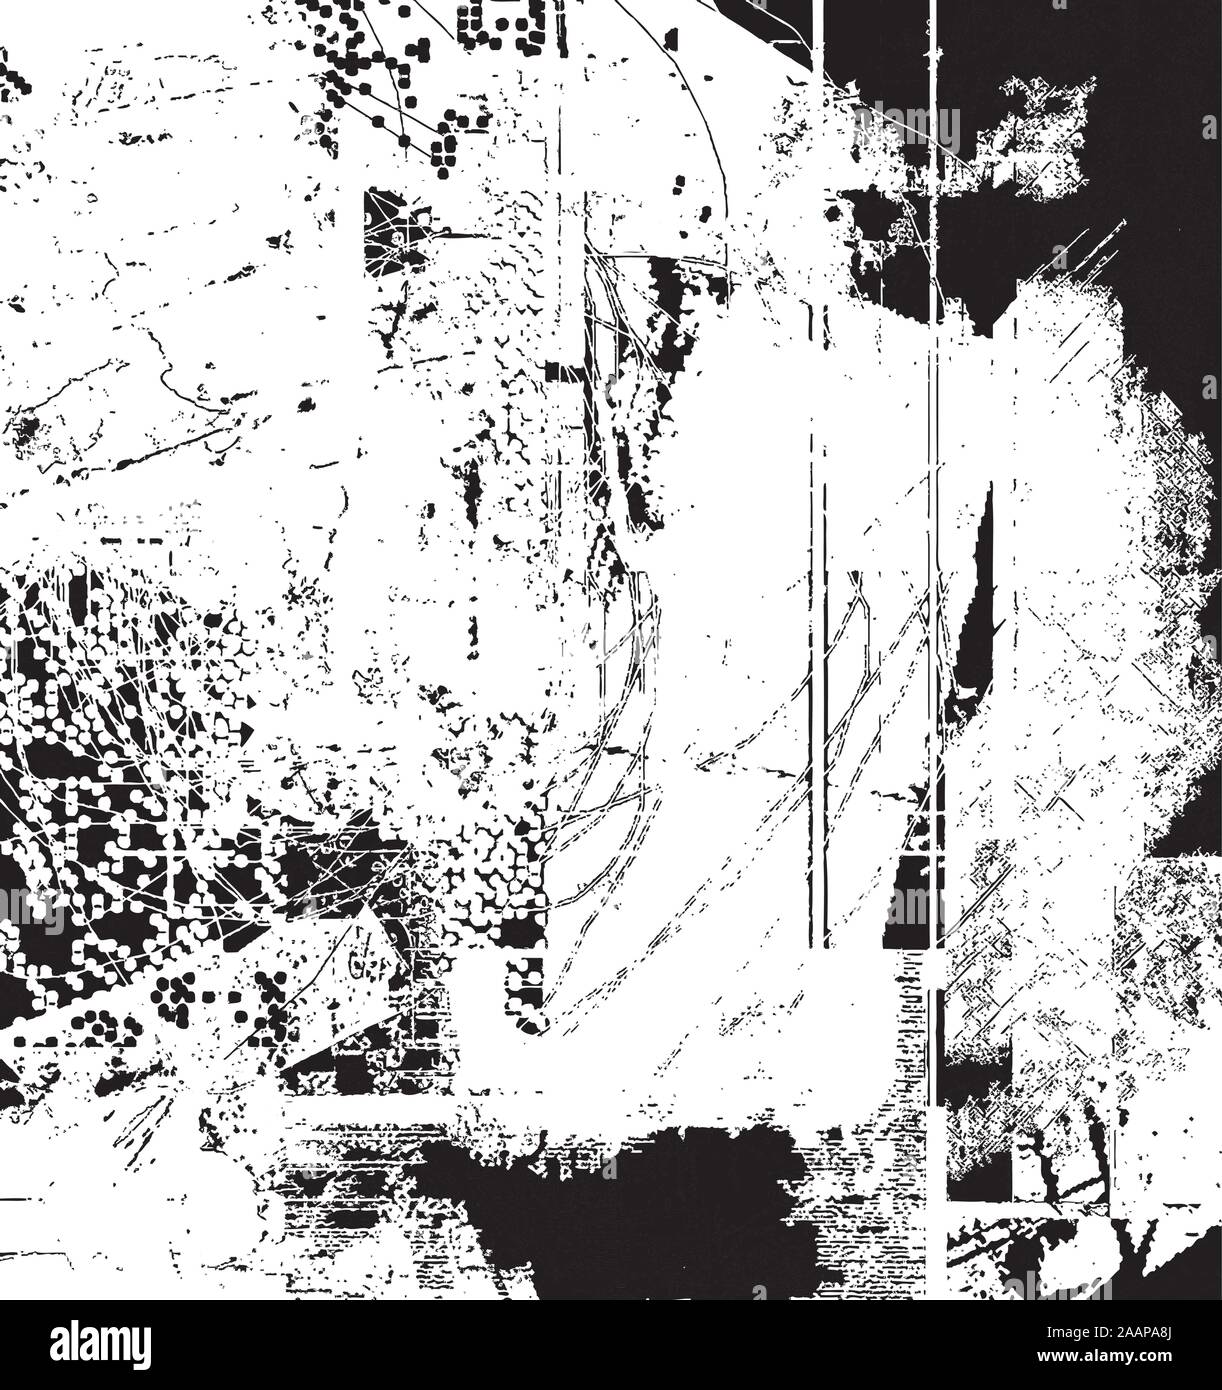 Abstract Background effetti Grunge Design della carta - i colori nero e bianco - uno stile rétro Illustrazione Vettoriale